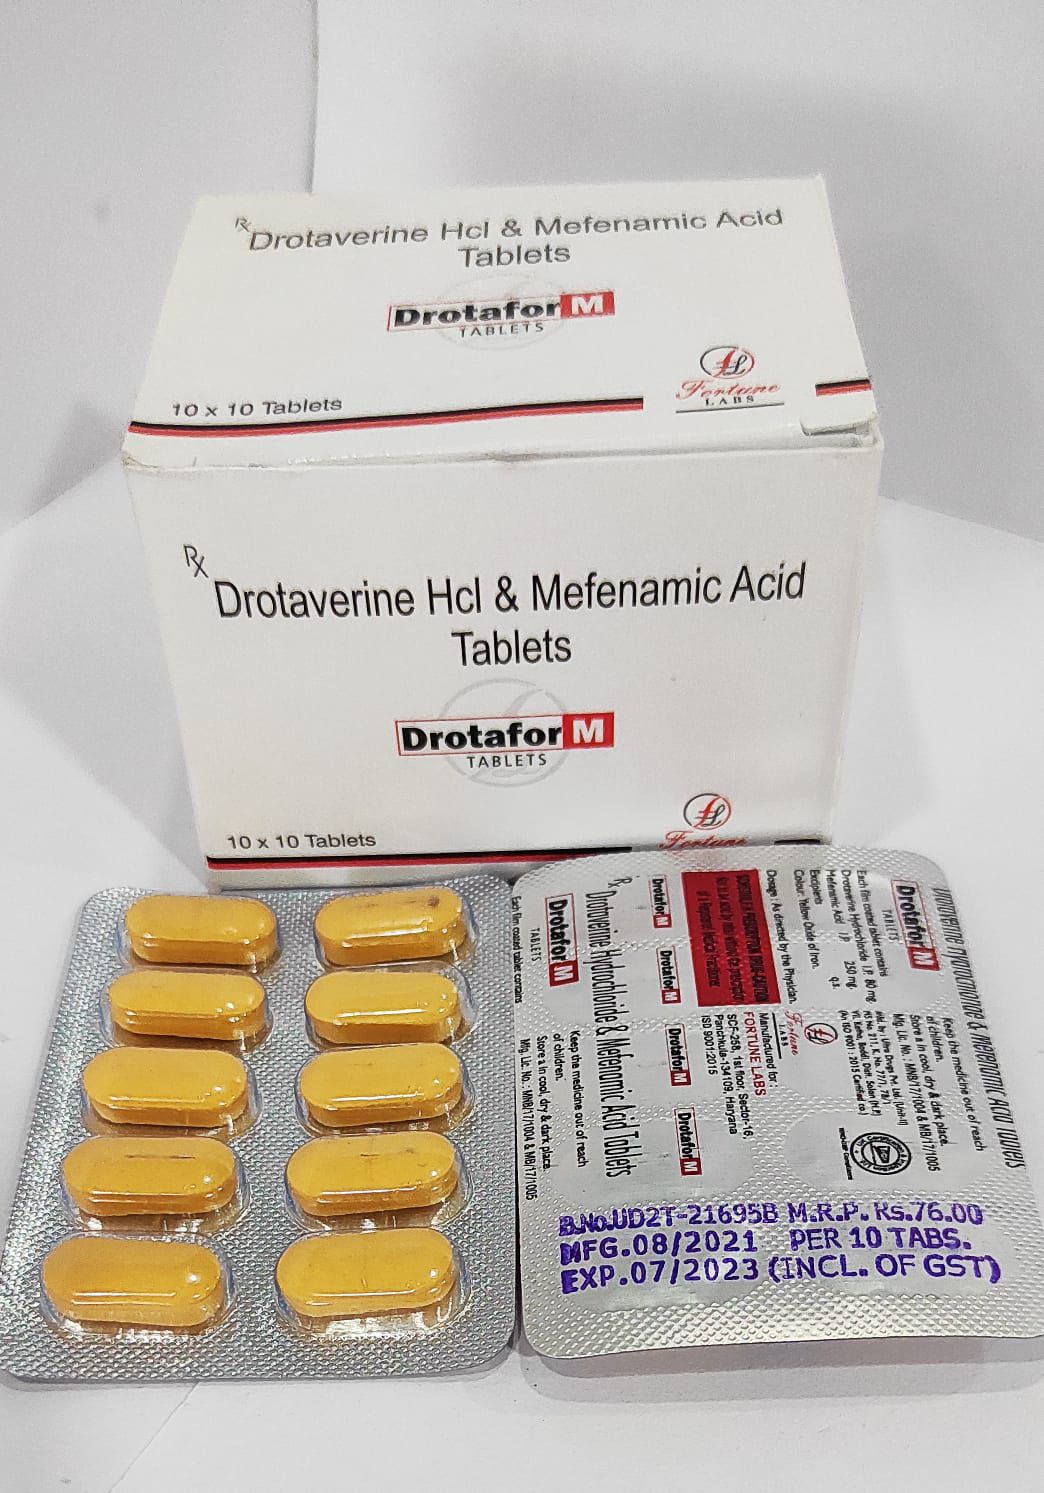 drotaverine 80mg + mefenamic acid 250mg